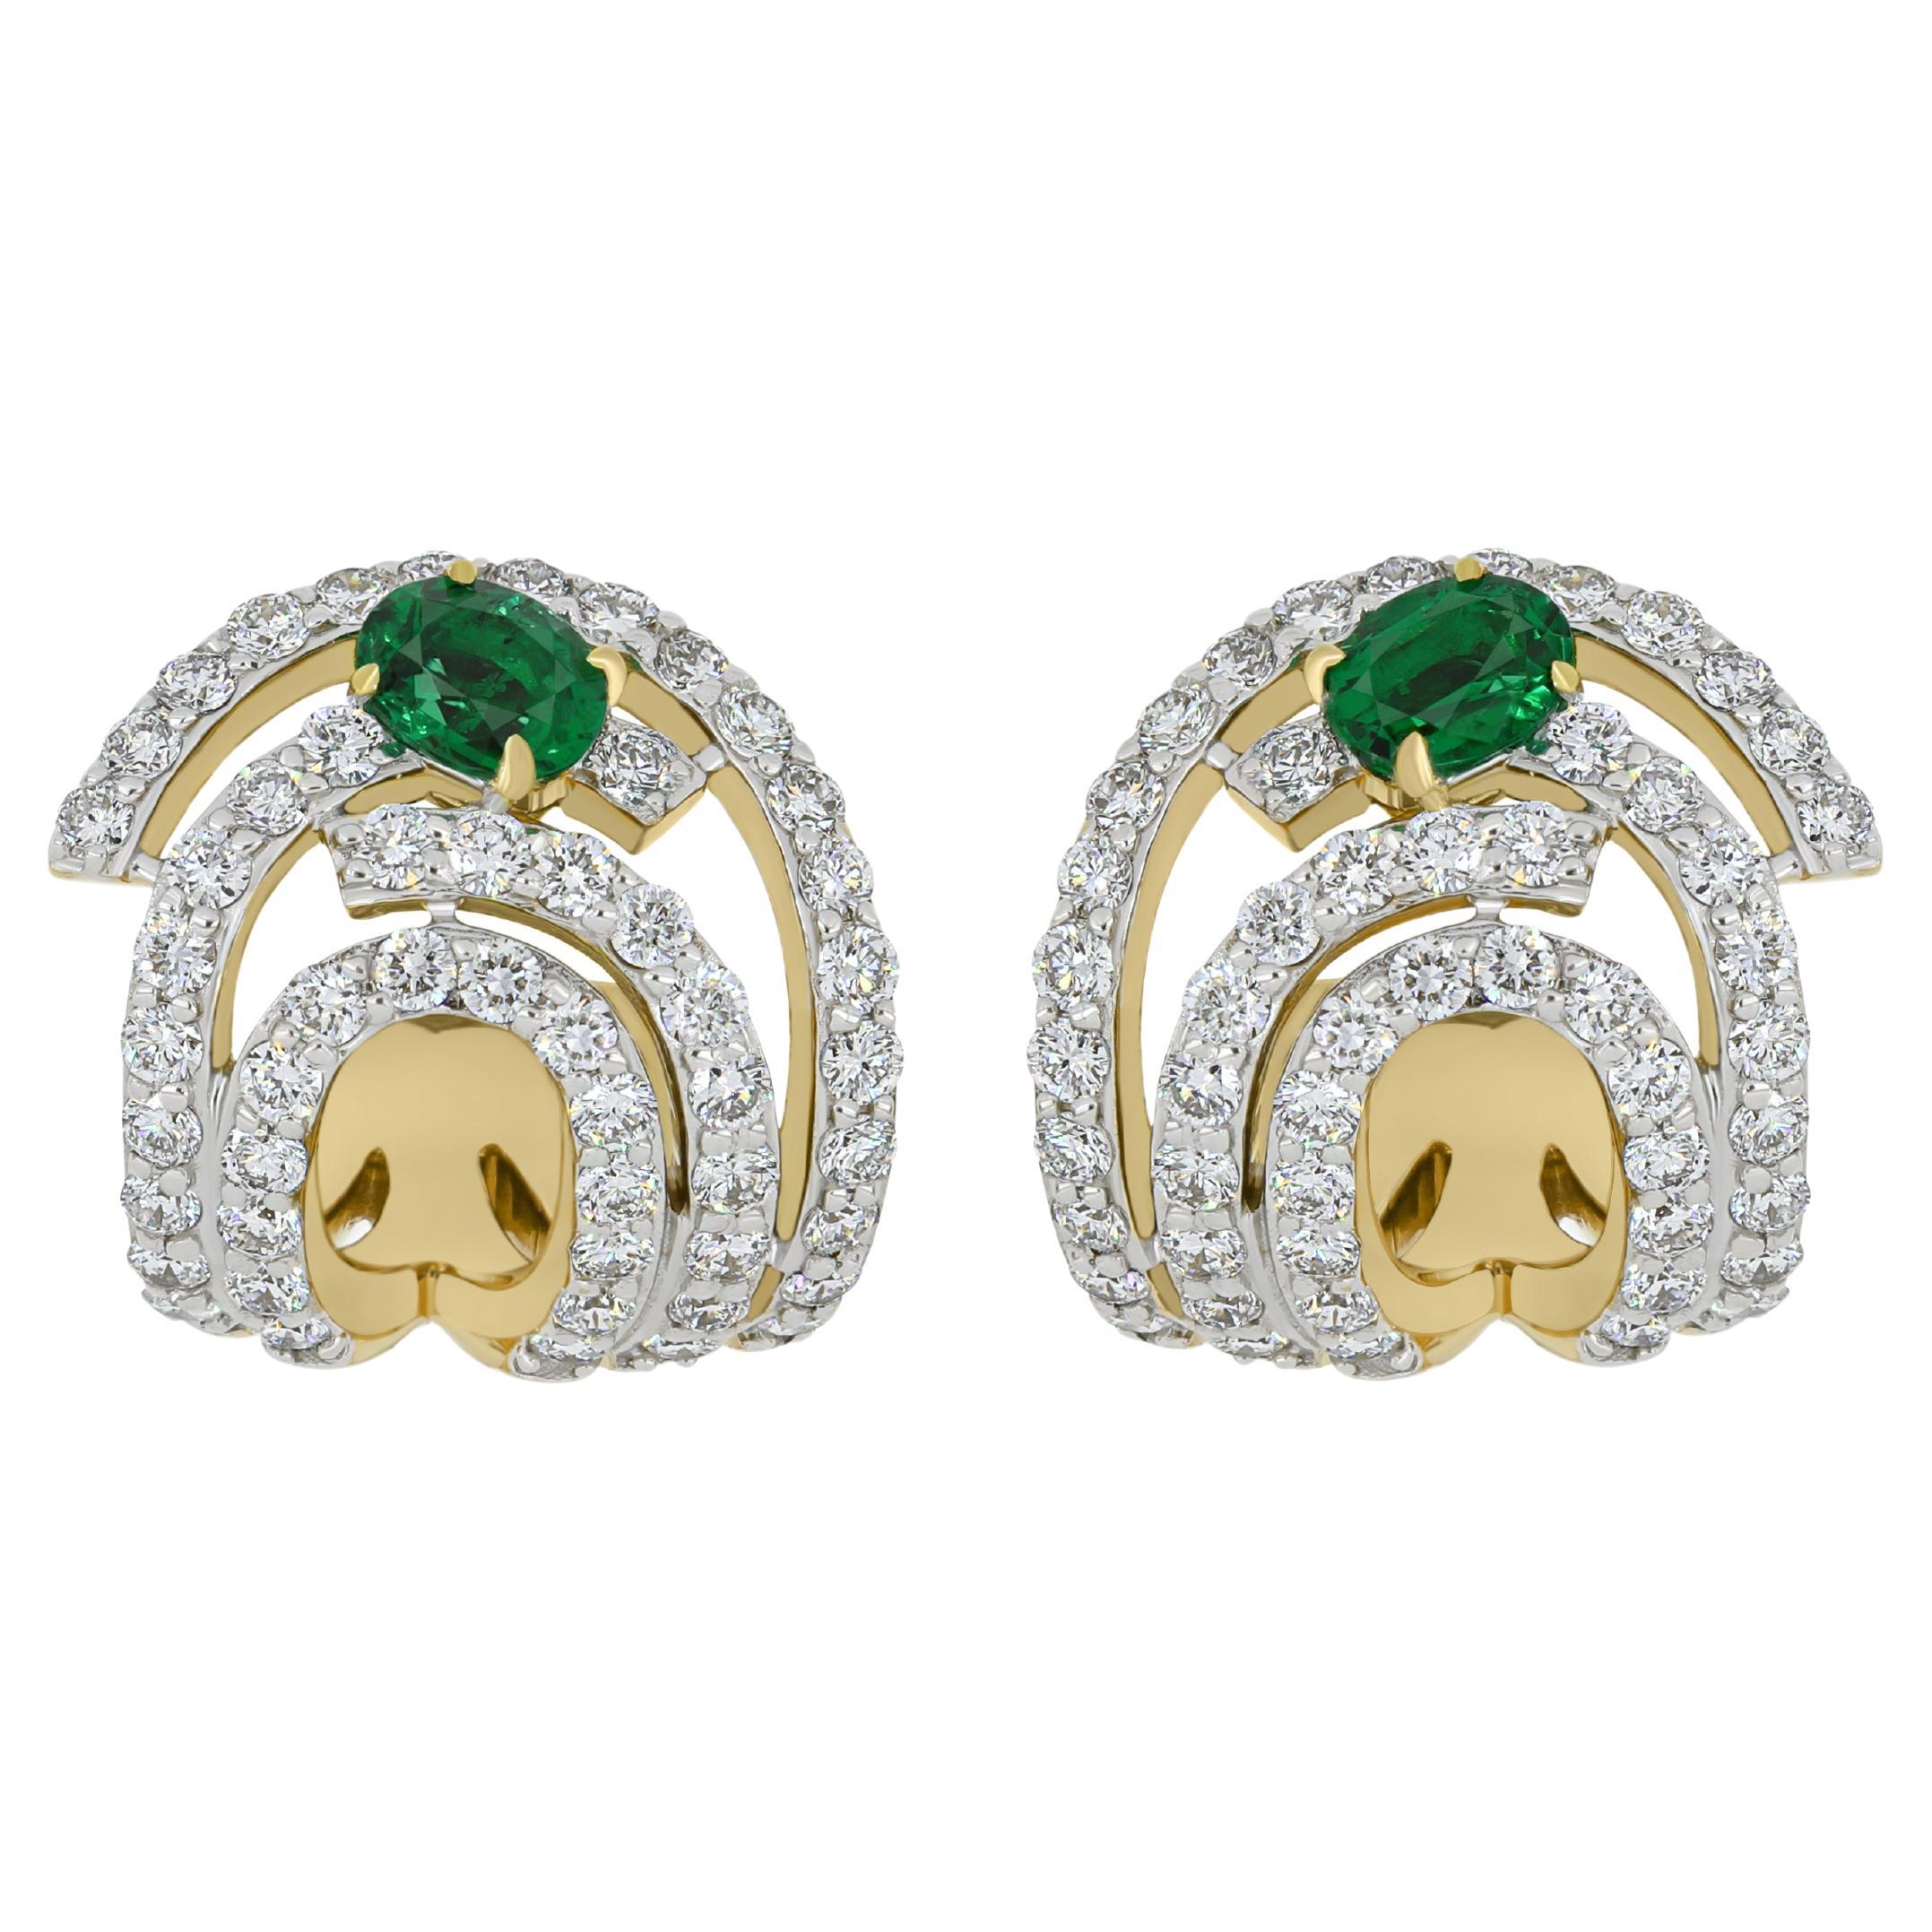 Emerald & Diamond Studded Earrings in 18K Yellow Gold jewelry, handcraft Earring For Sale